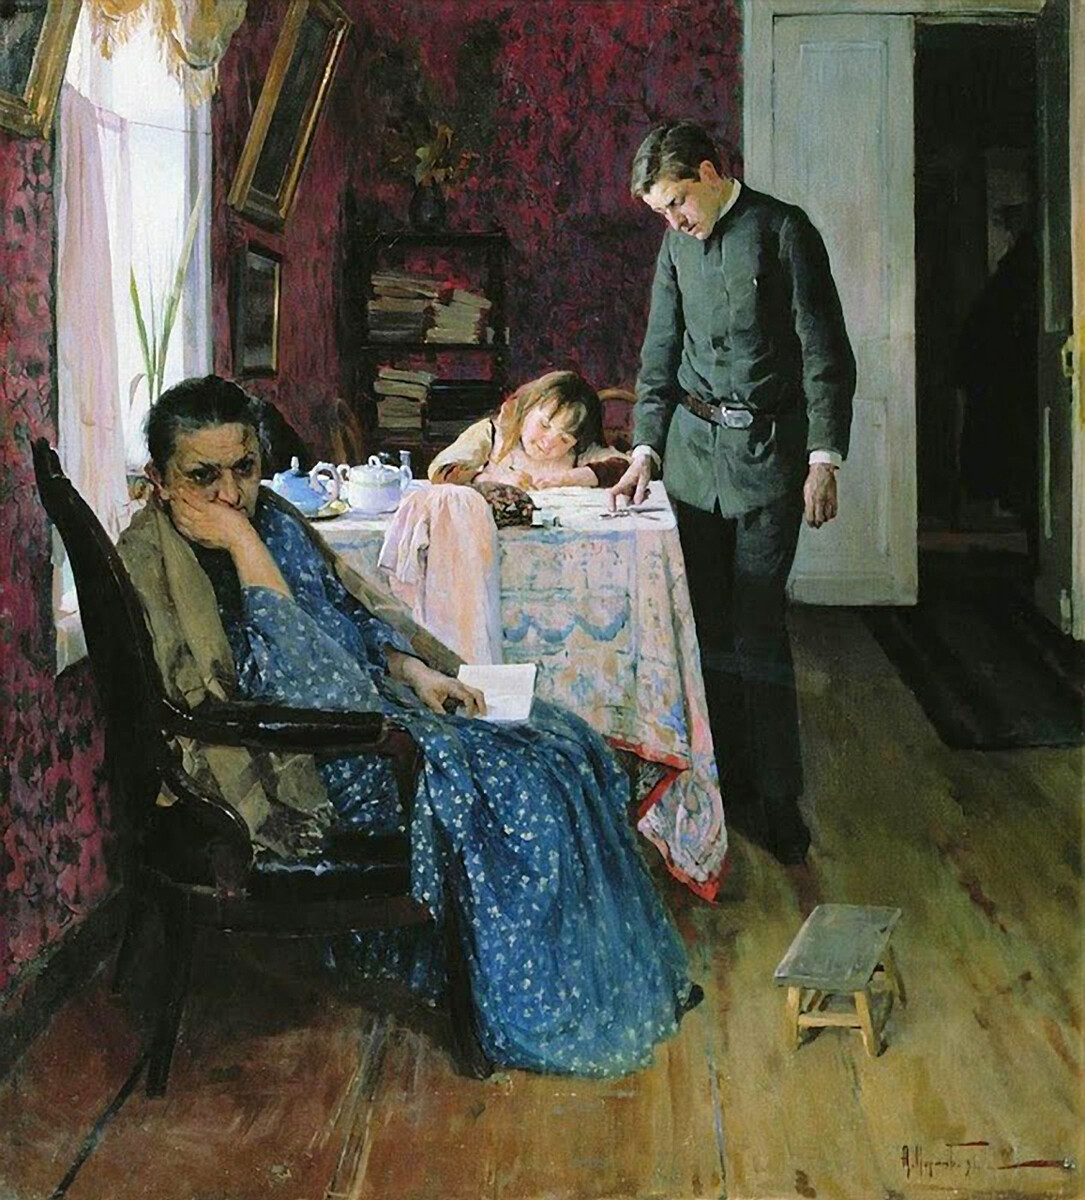 Aleksej Korin, “Bocciato di nuovo”, 1891
